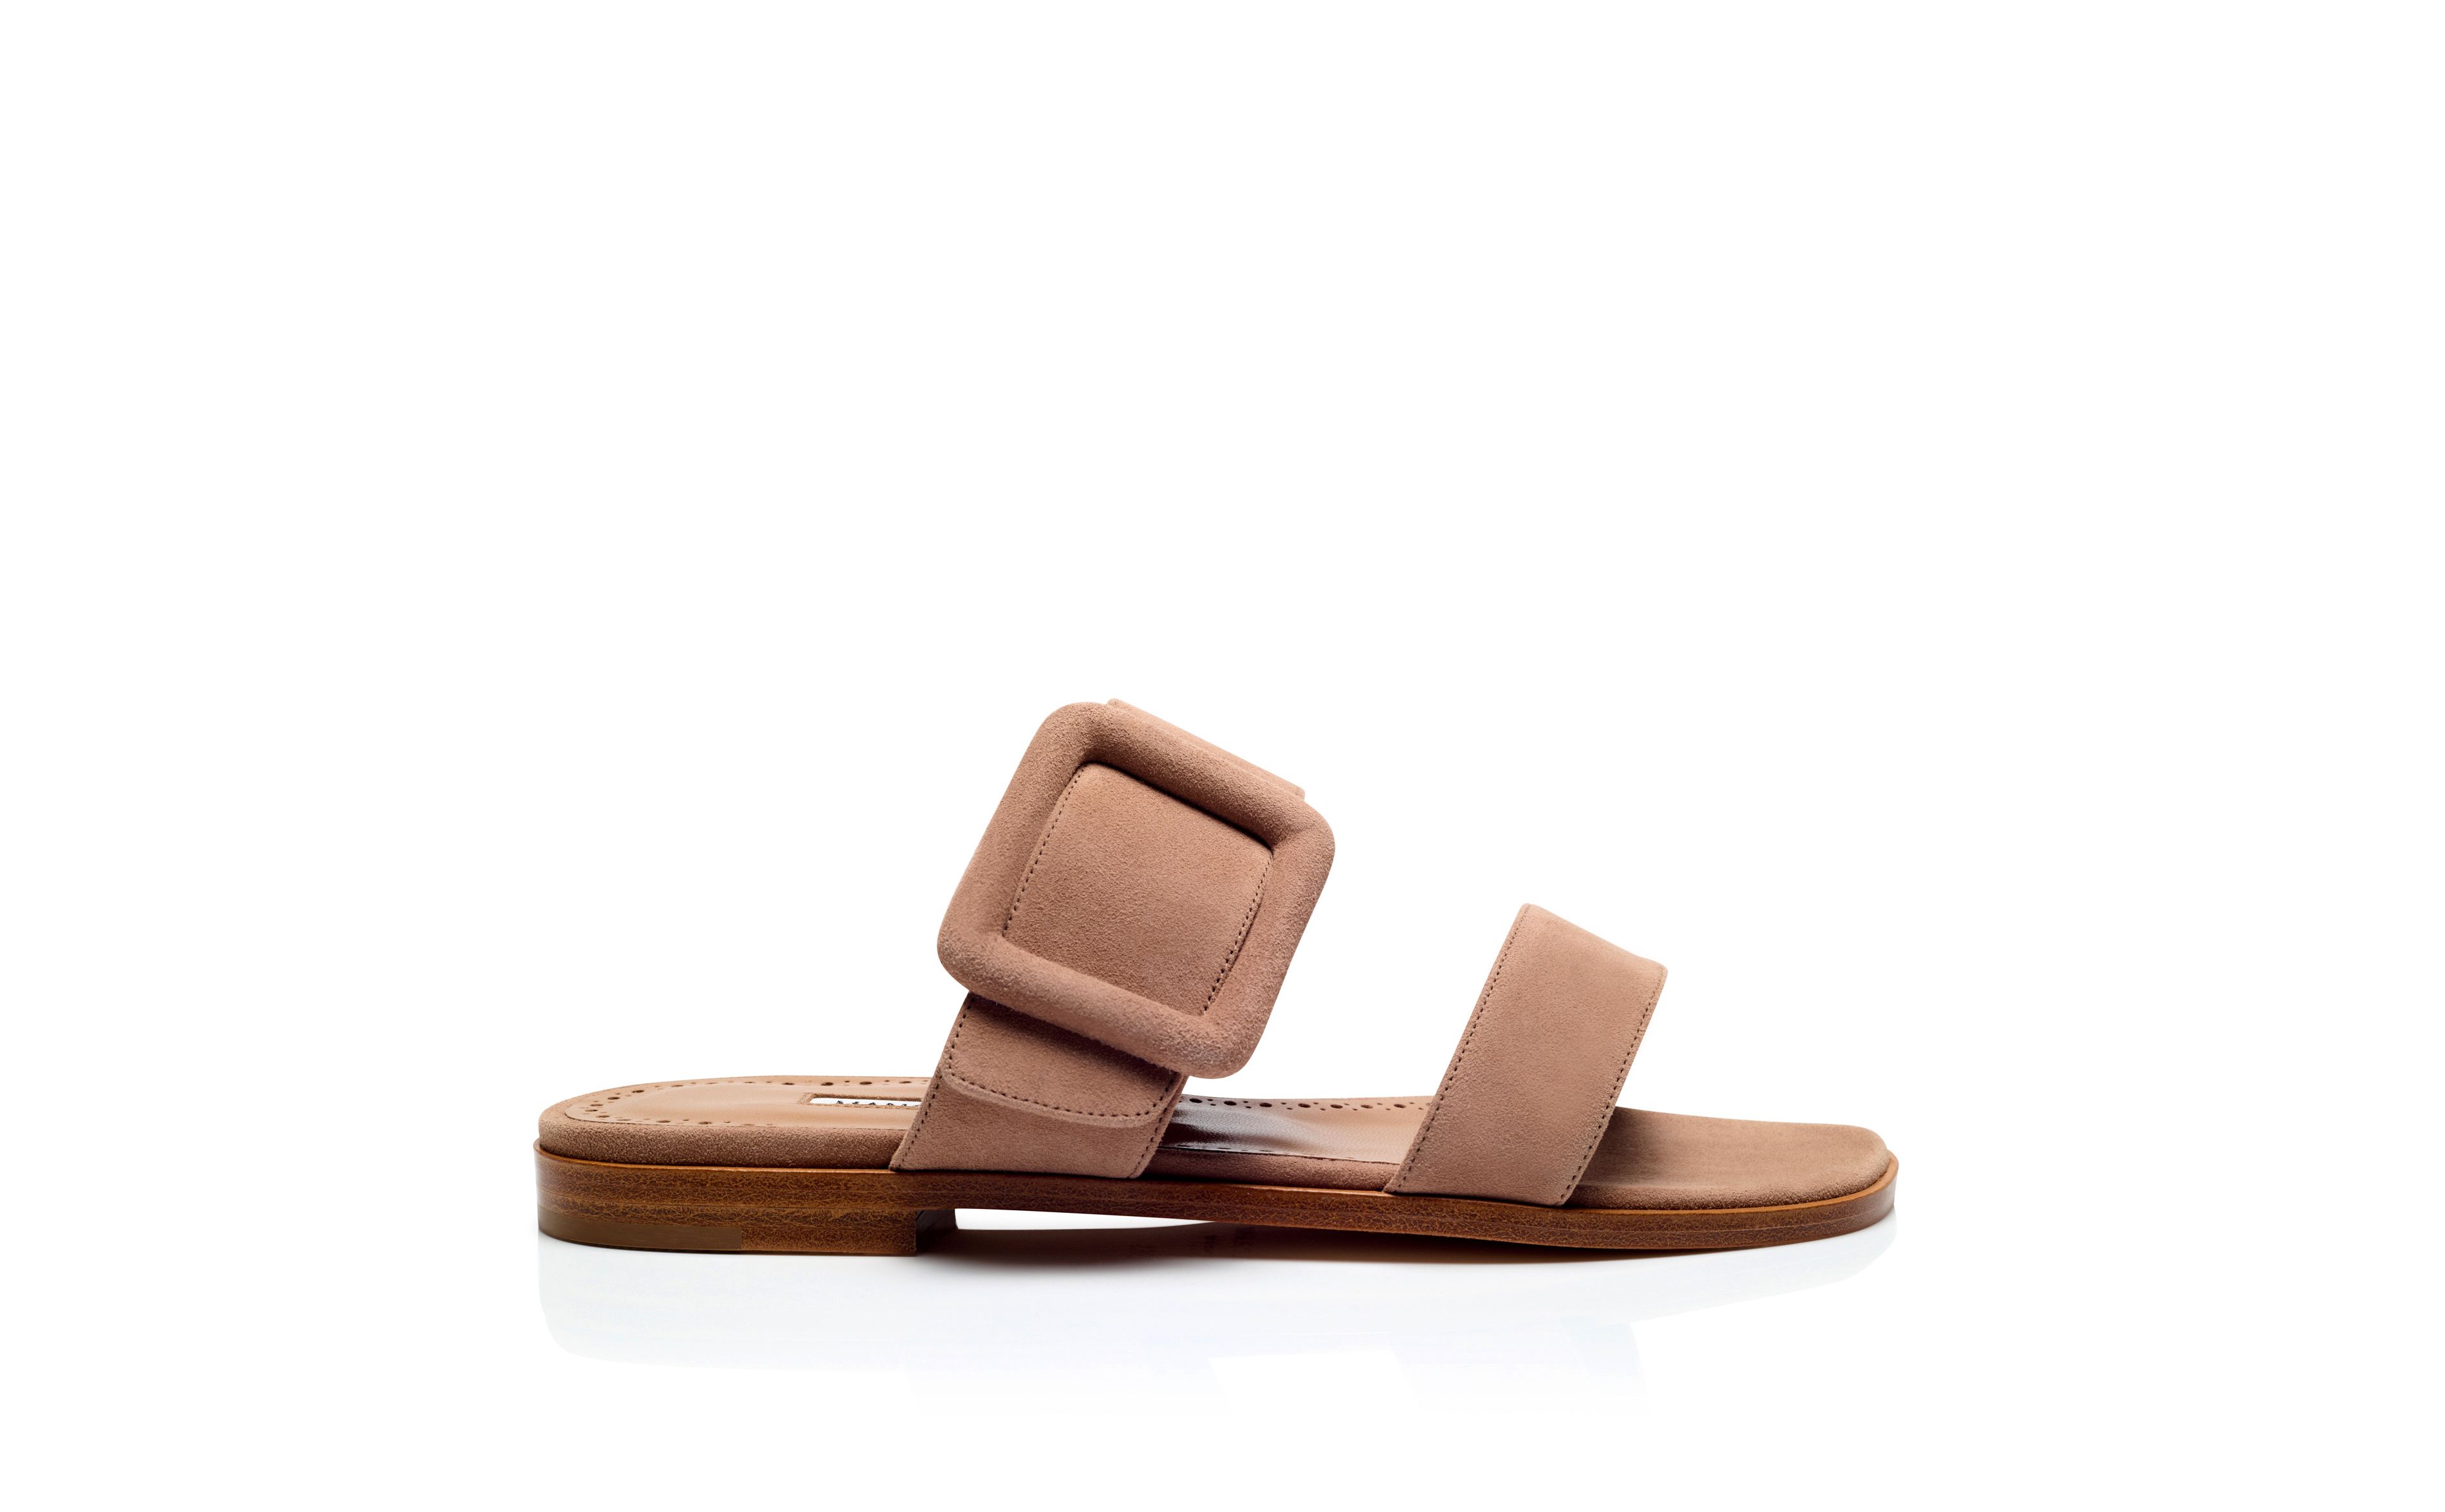 Designer Light Beige Suede Flat Sandals - Image Side View